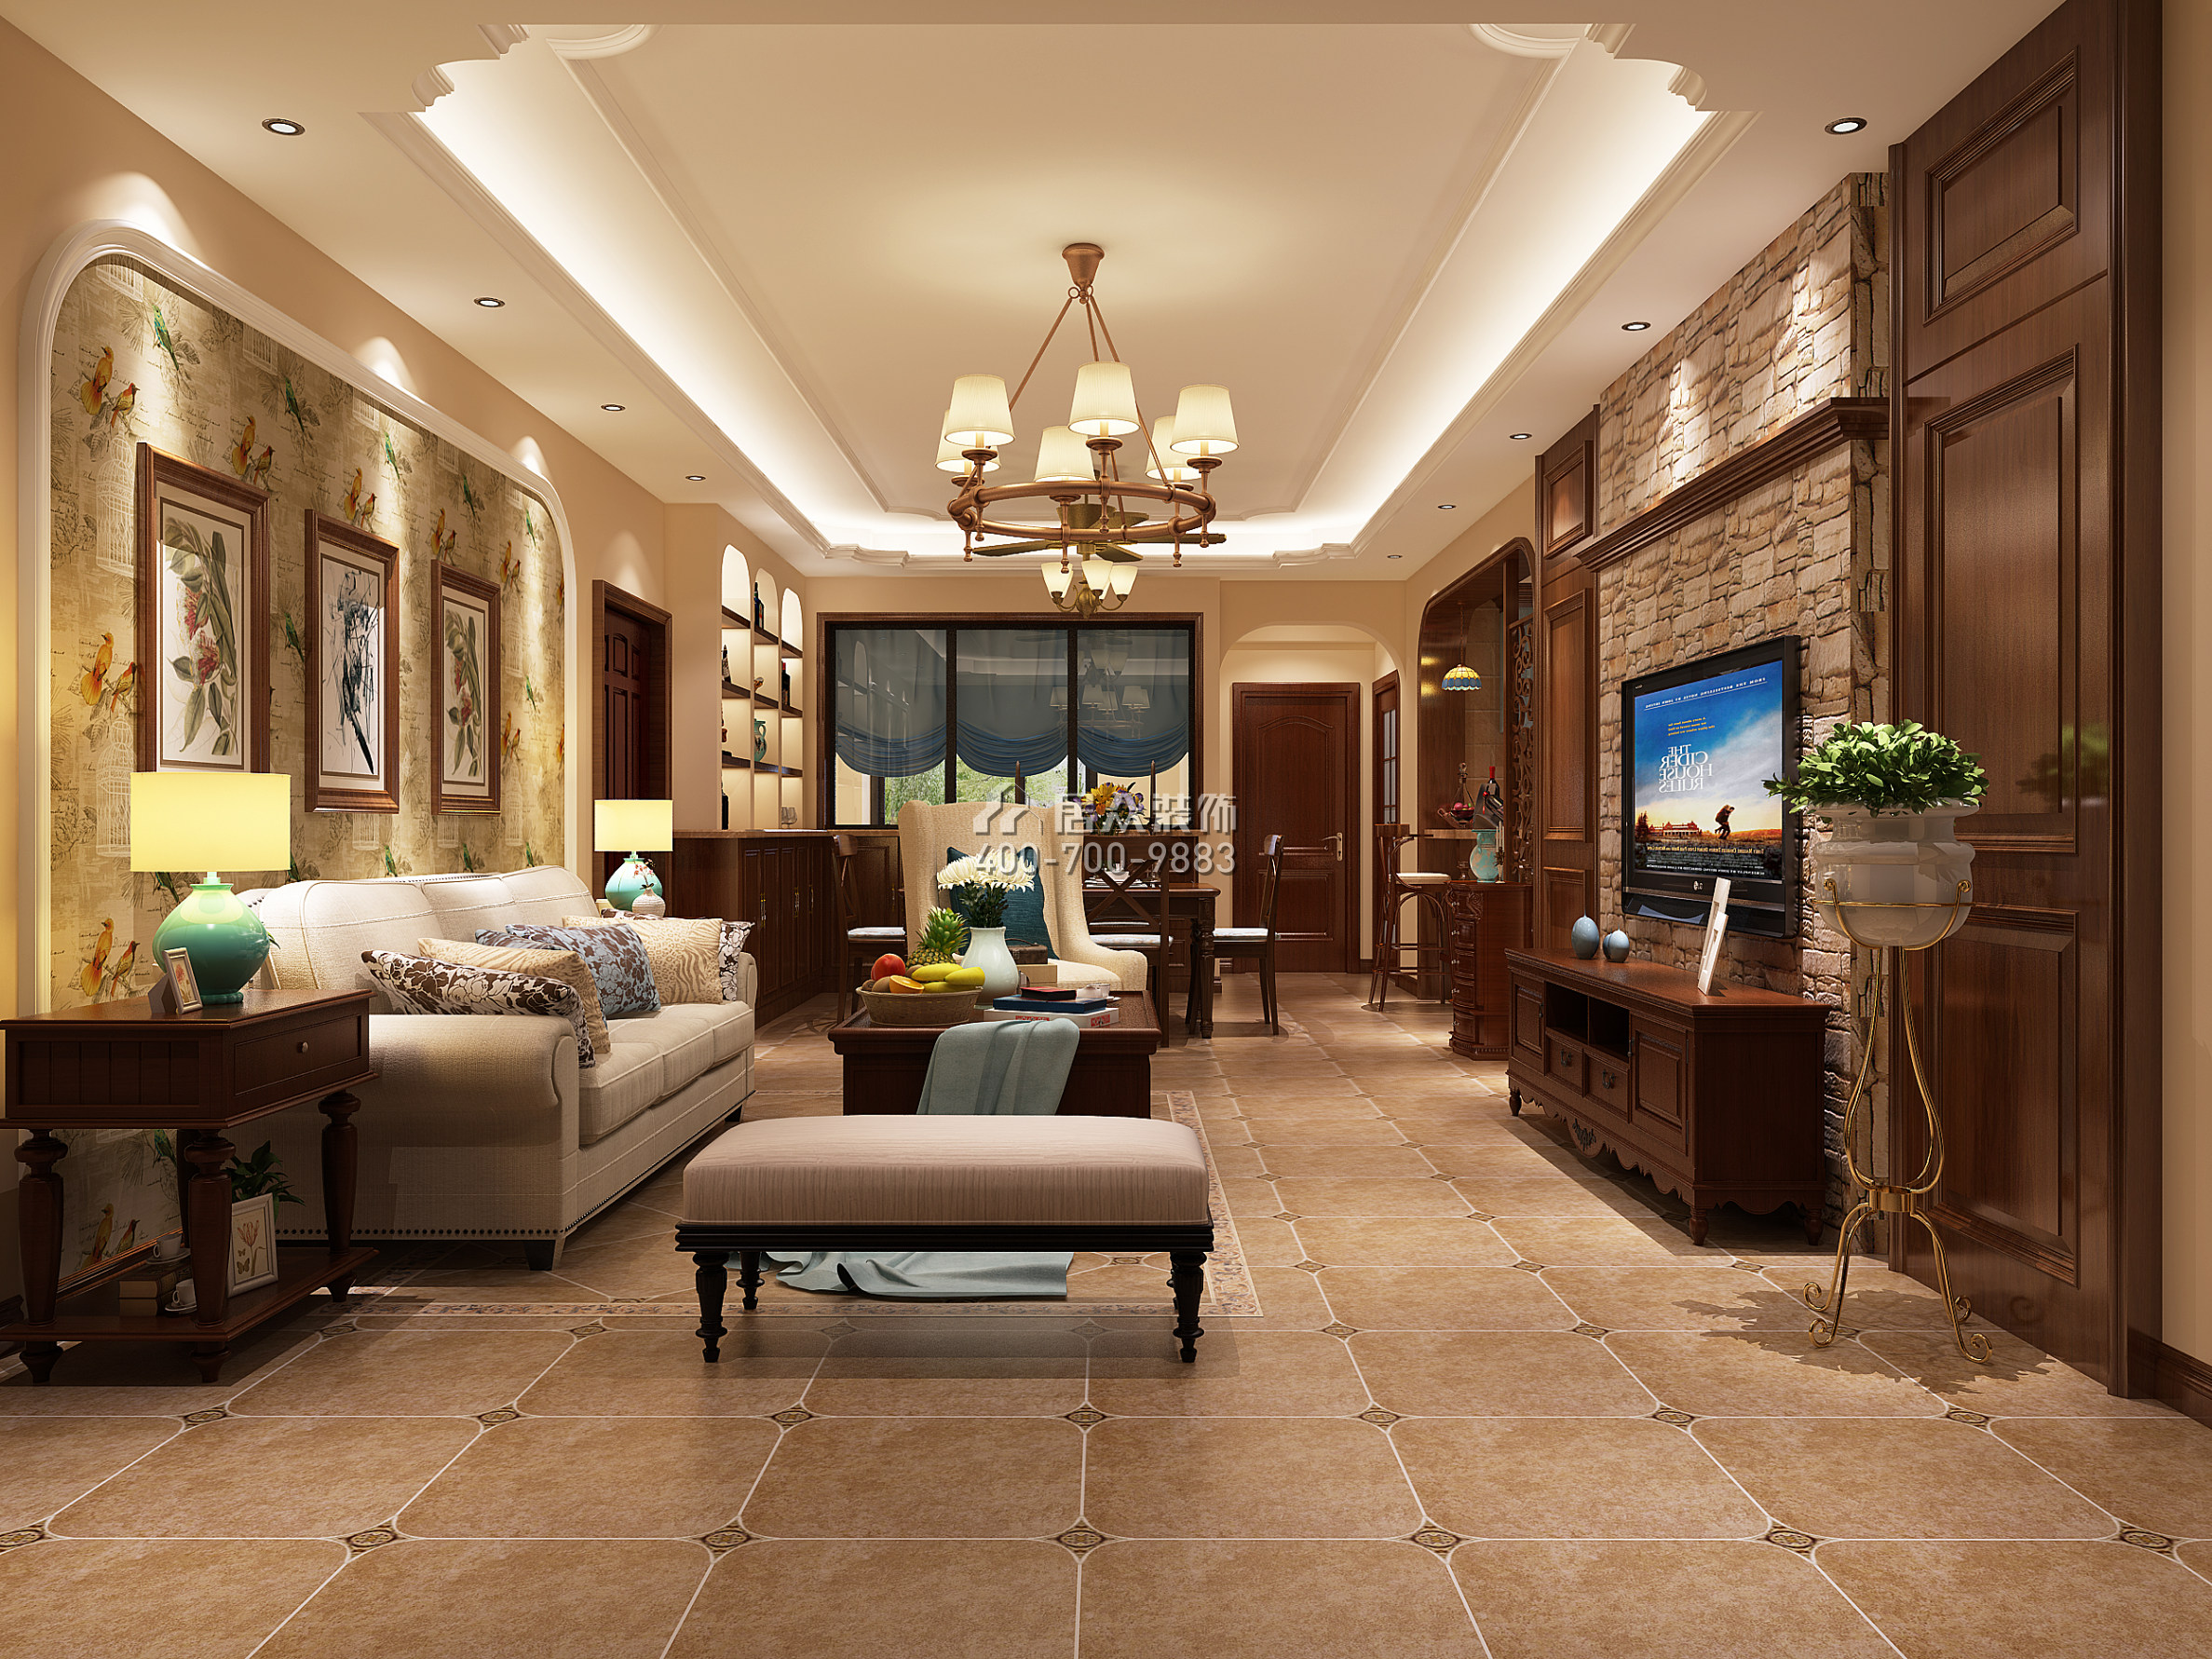 奥园神农养生城114平方米美式风格平层户型客厅装修效果图